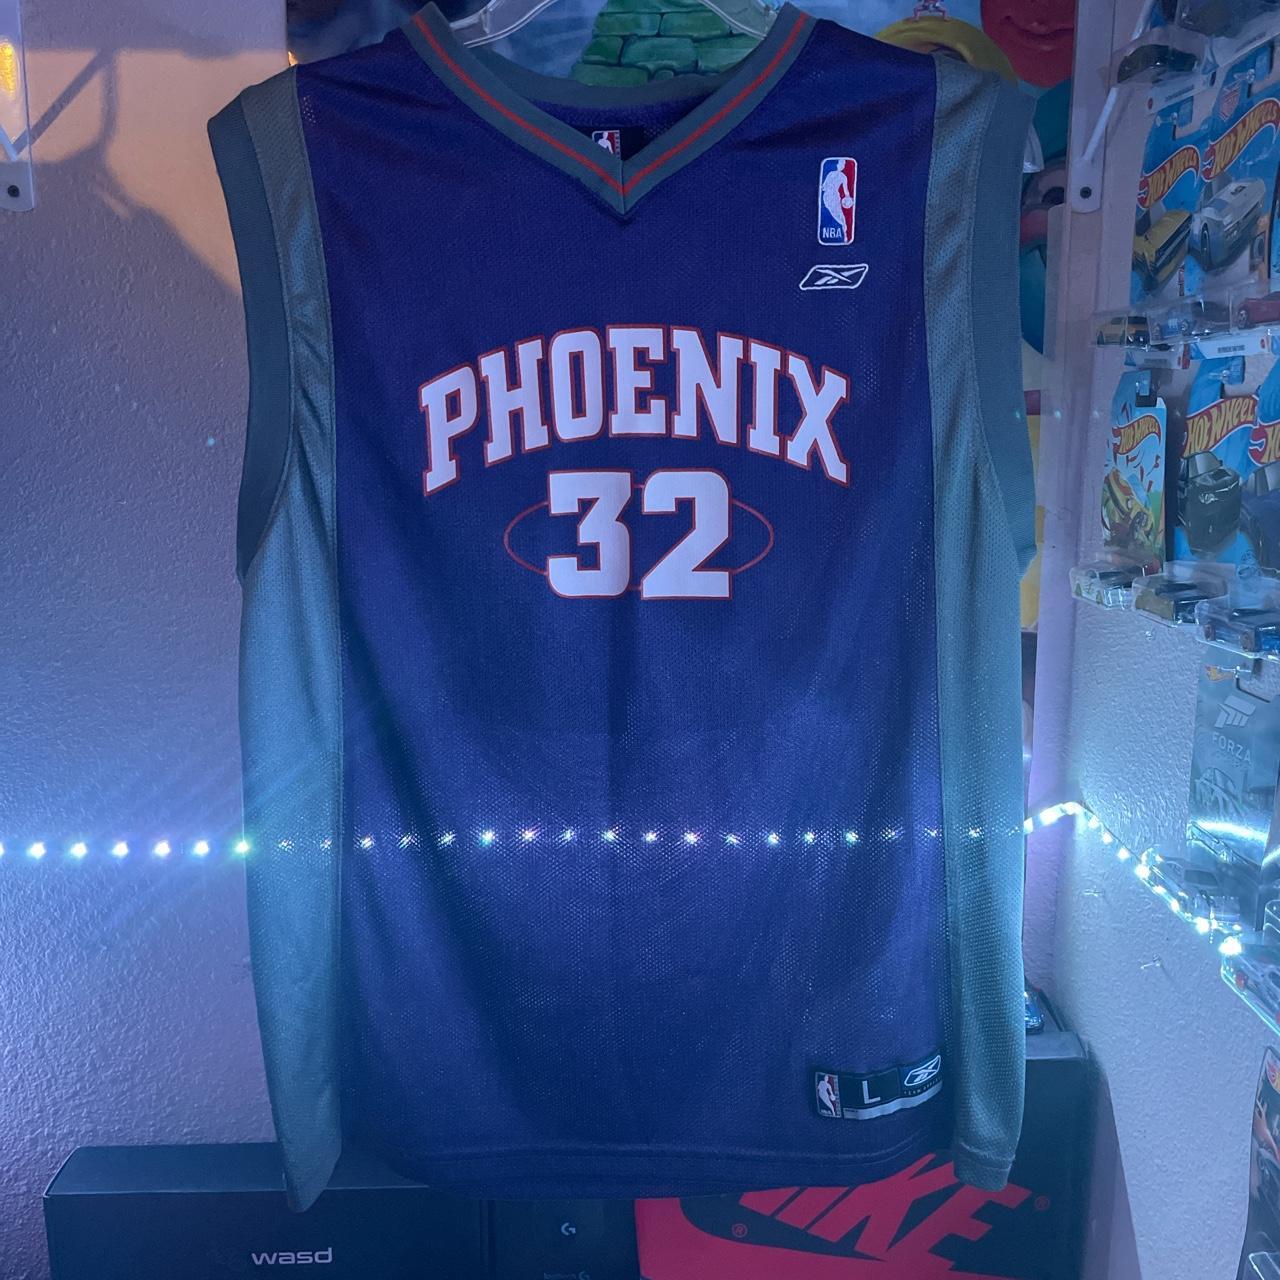 Phoenix Suns “STOUDEMIRE 32” Authentic NBA Jersey - Depop